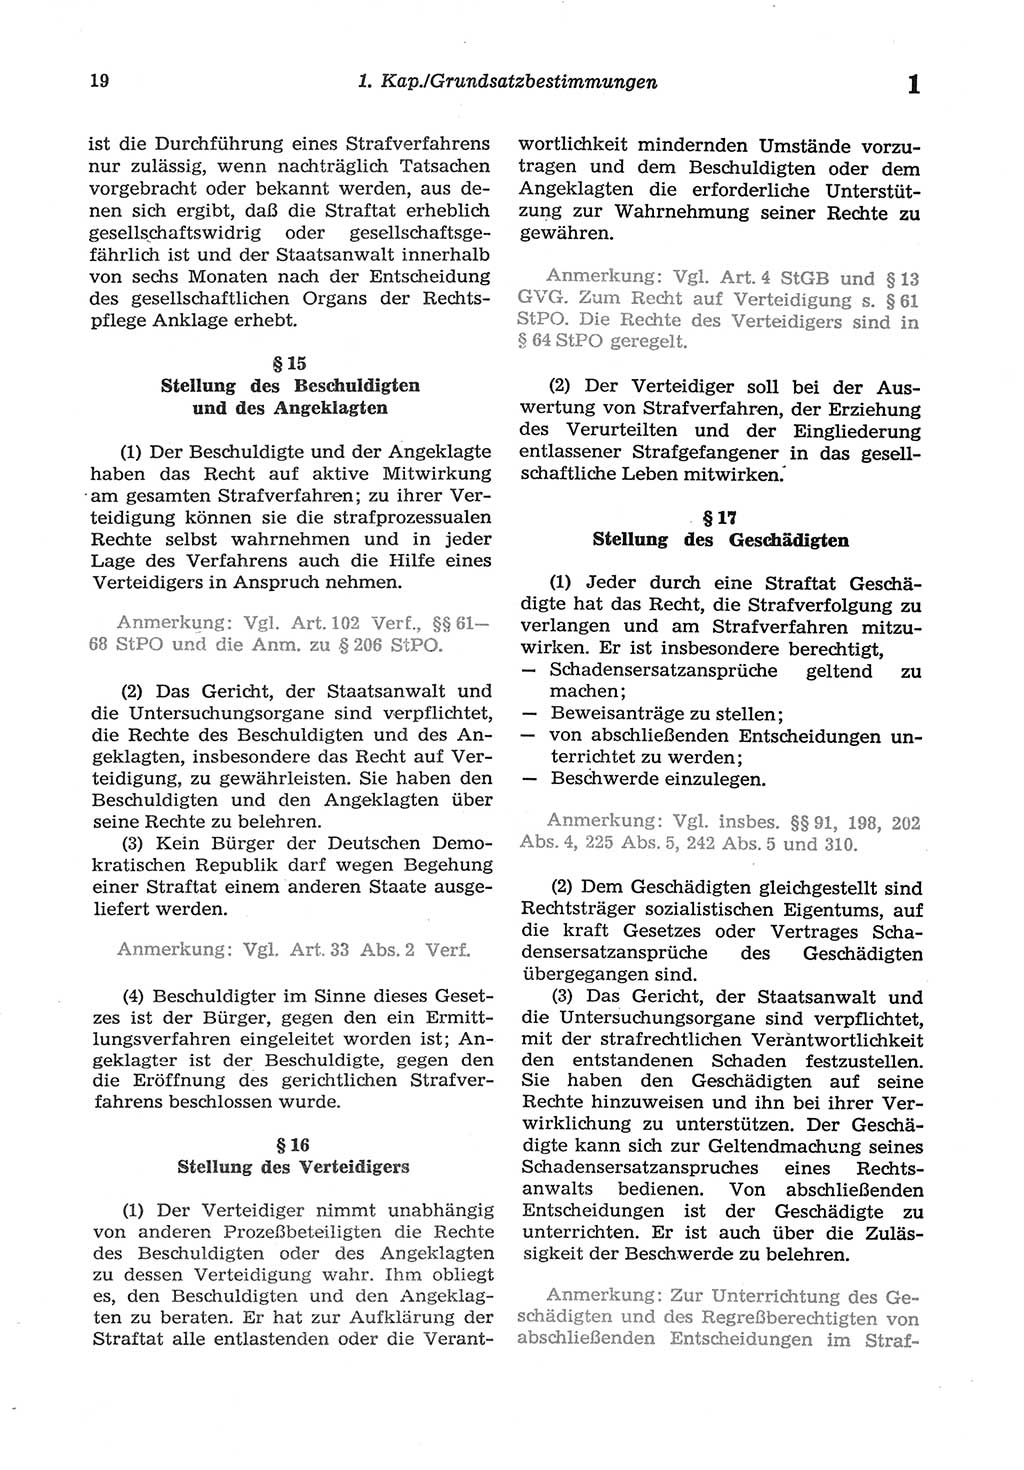 Strafprozeßordnung (StPO) der Deutschen Demokratischen Republik (DDR) sowie angrenzende Gesetze und Bestimmungen 1977, Seite 19 (StPO DDR Ges. Best. 1977, S. 19)